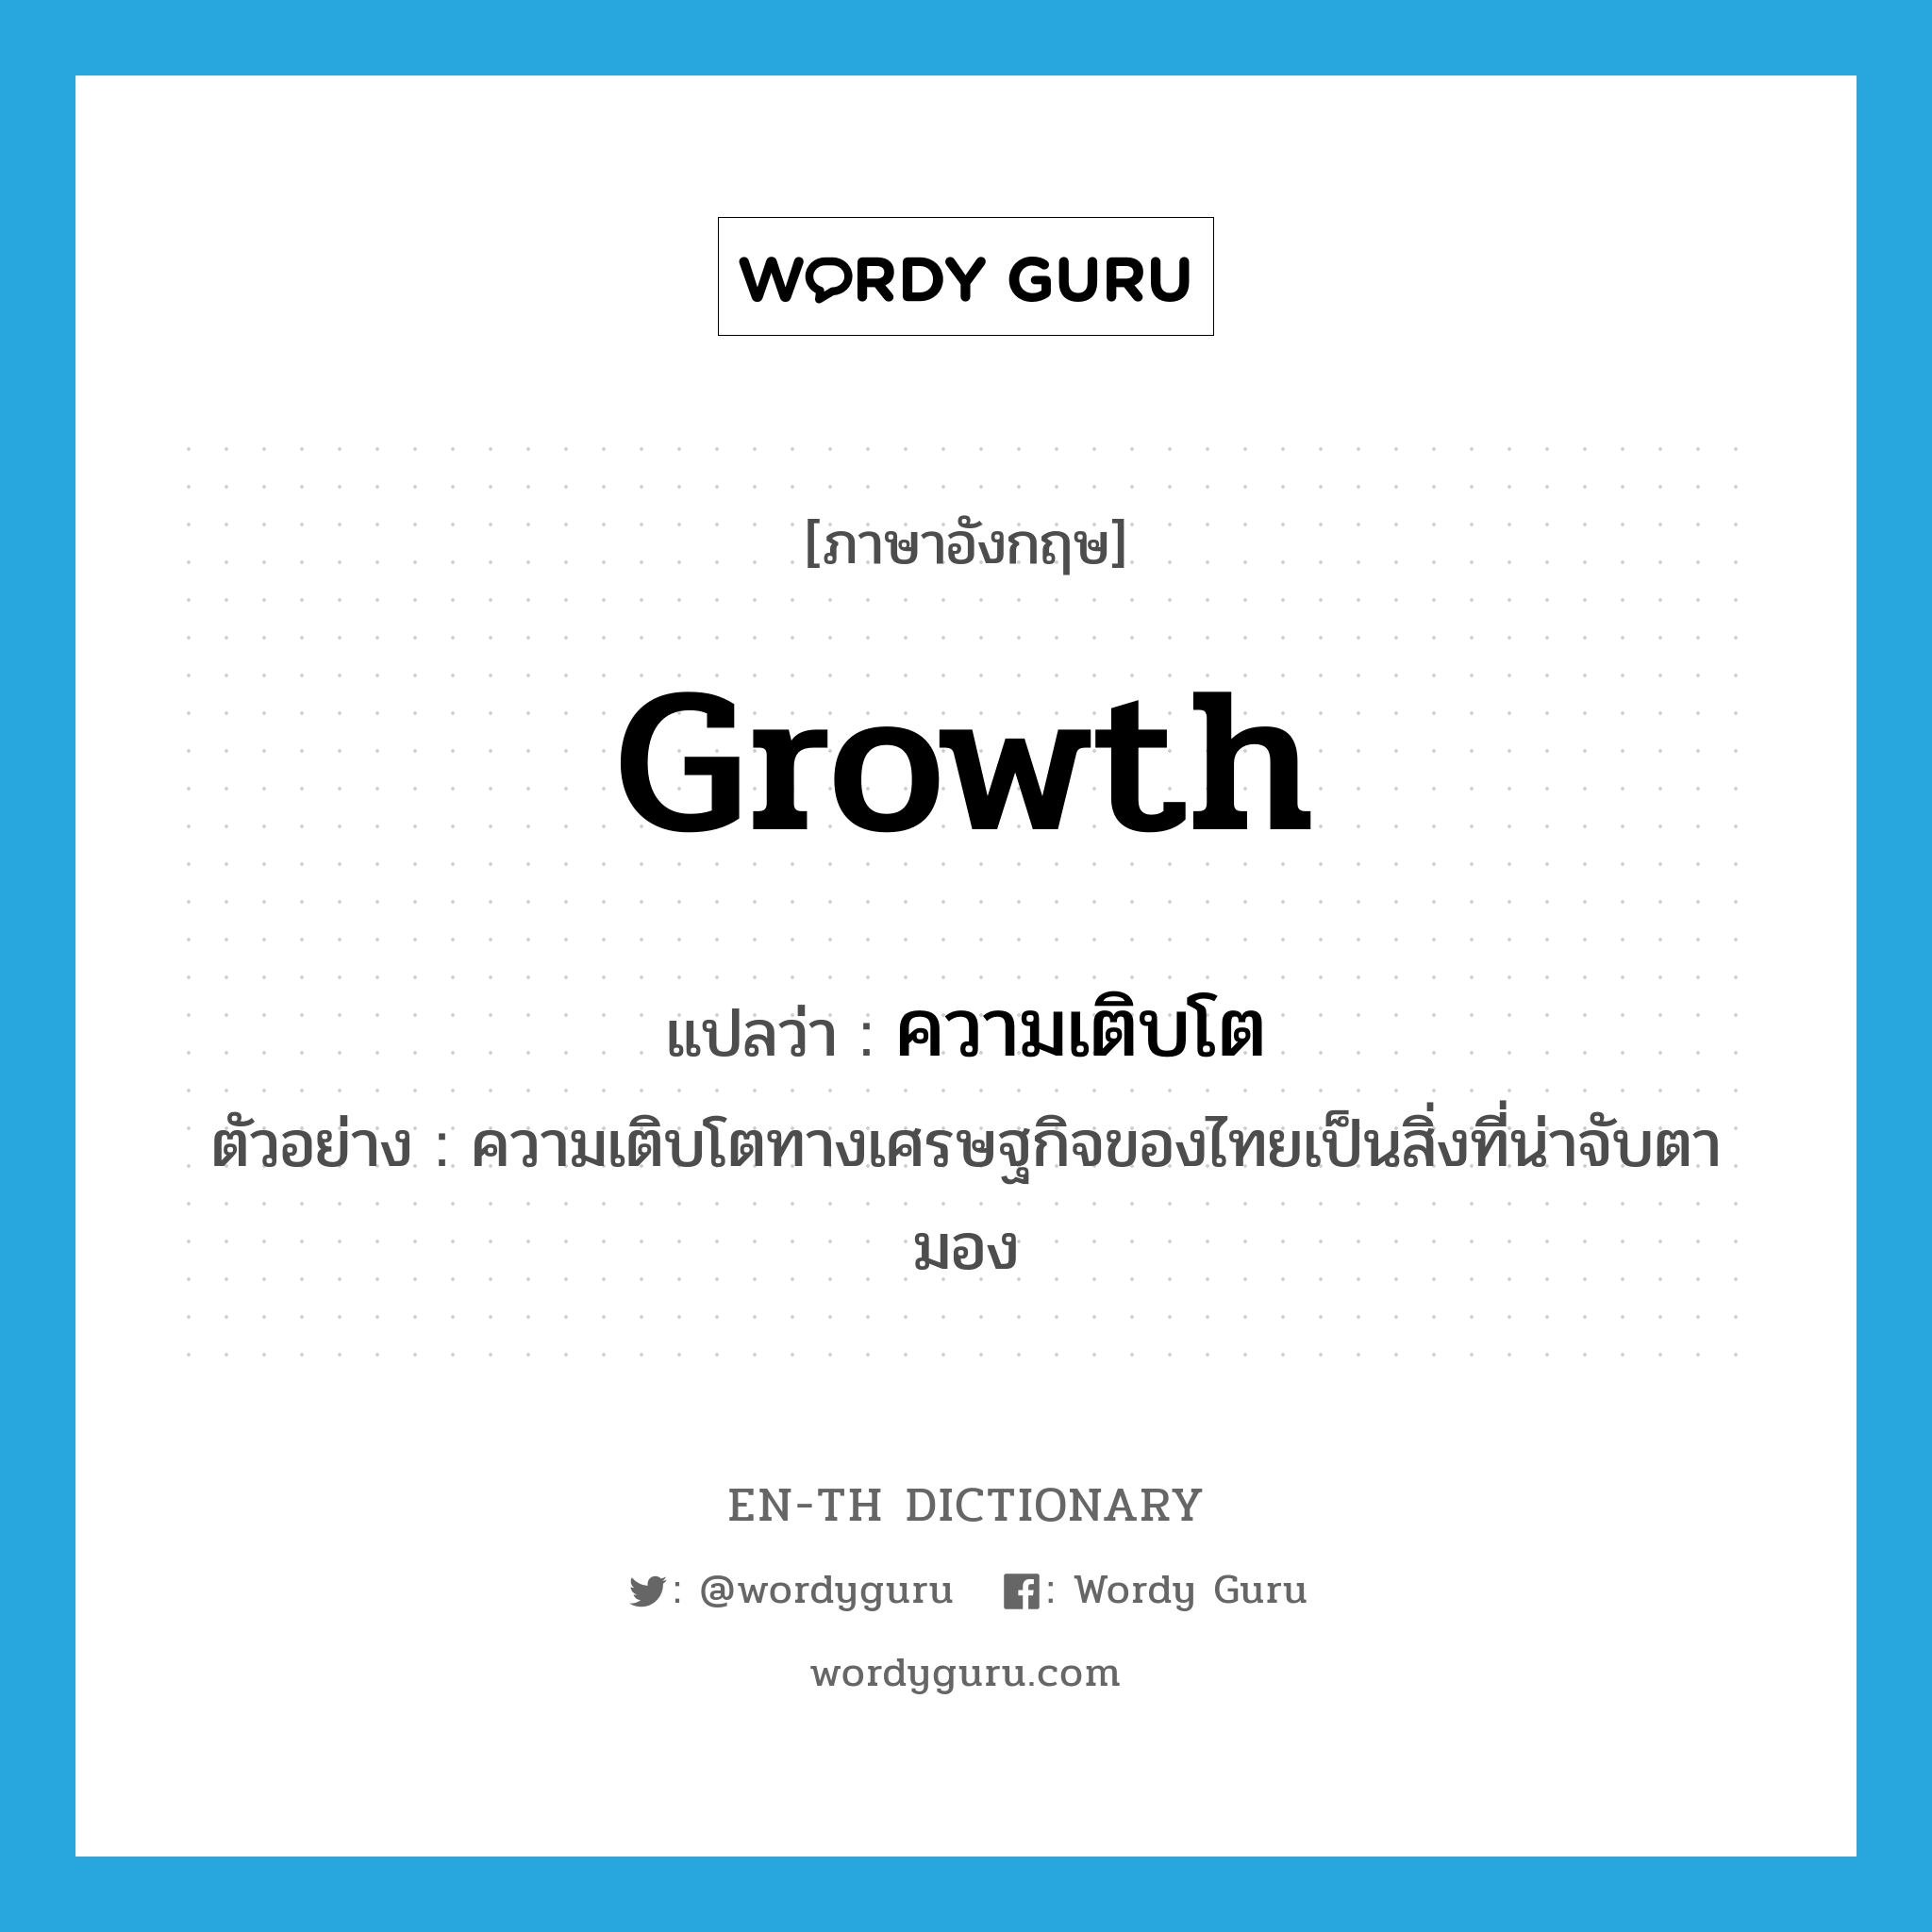 ความเติบโต ภาษาอังกฤษ?, คำศัพท์ภาษาอังกฤษ ความเติบโต แปลว่า growth ประเภท N ตัวอย่าง ความเติบโตทางเศรษฐกิจของไทยเป็นสิ่งที่น่าจับตามอง หมวด N